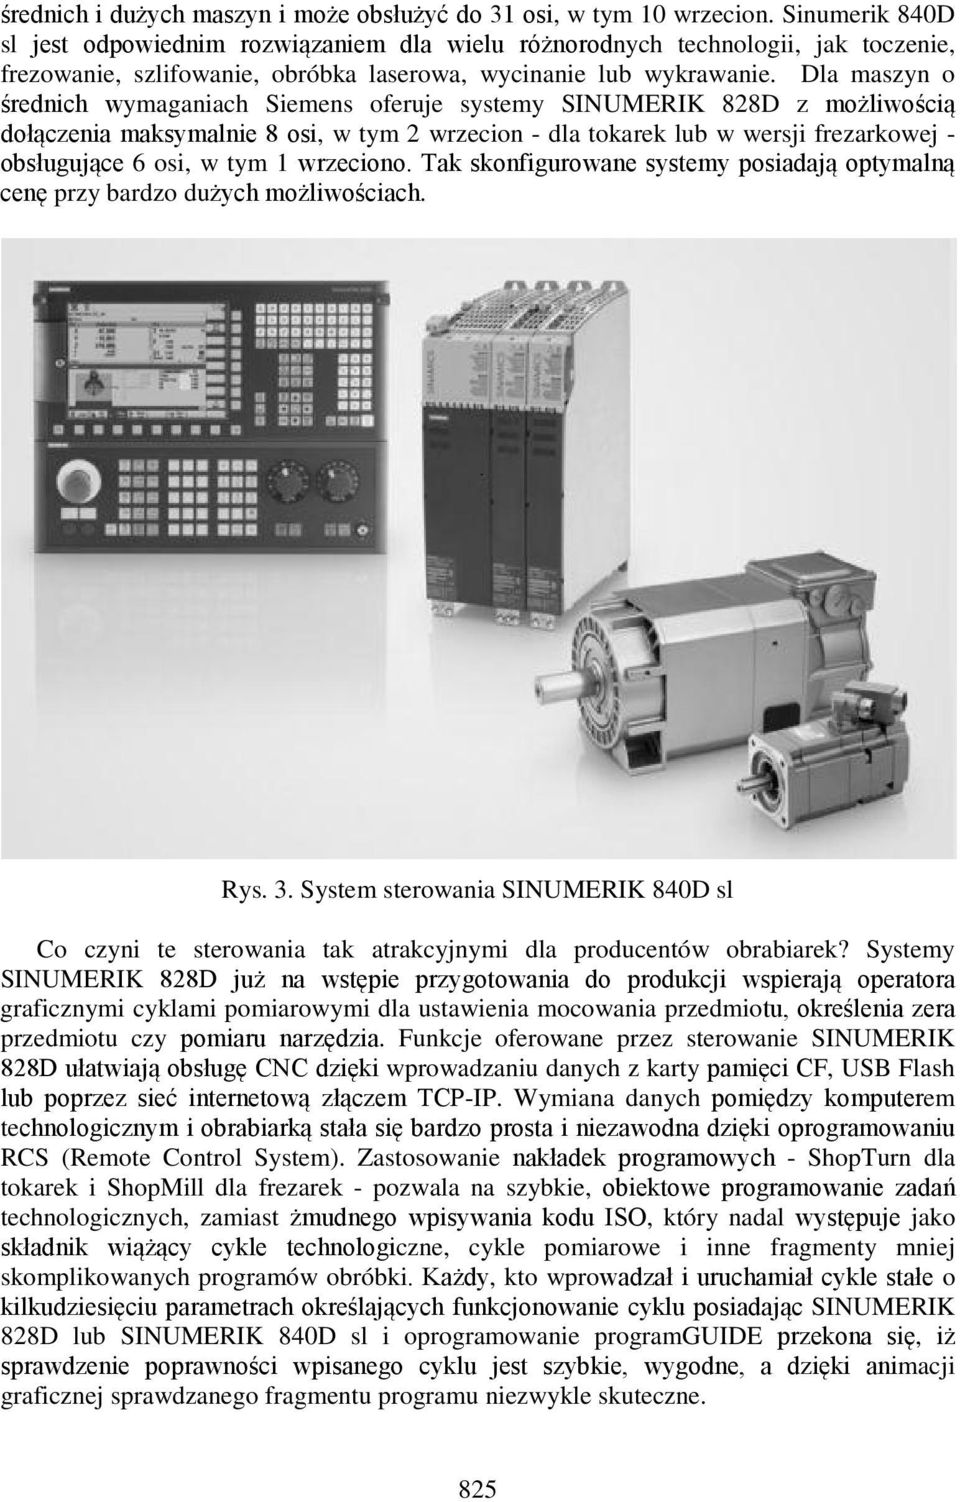 Dla maszyn o średnich wymaganiach Siemens oferuje systemy SINUMERIK 828D z możliwością dołączenia maksymalnie 8 osi, w tym 2 wrzecion - dla tokarek lub w wersji frezarkowej - obsługujące 6 osi, w tym